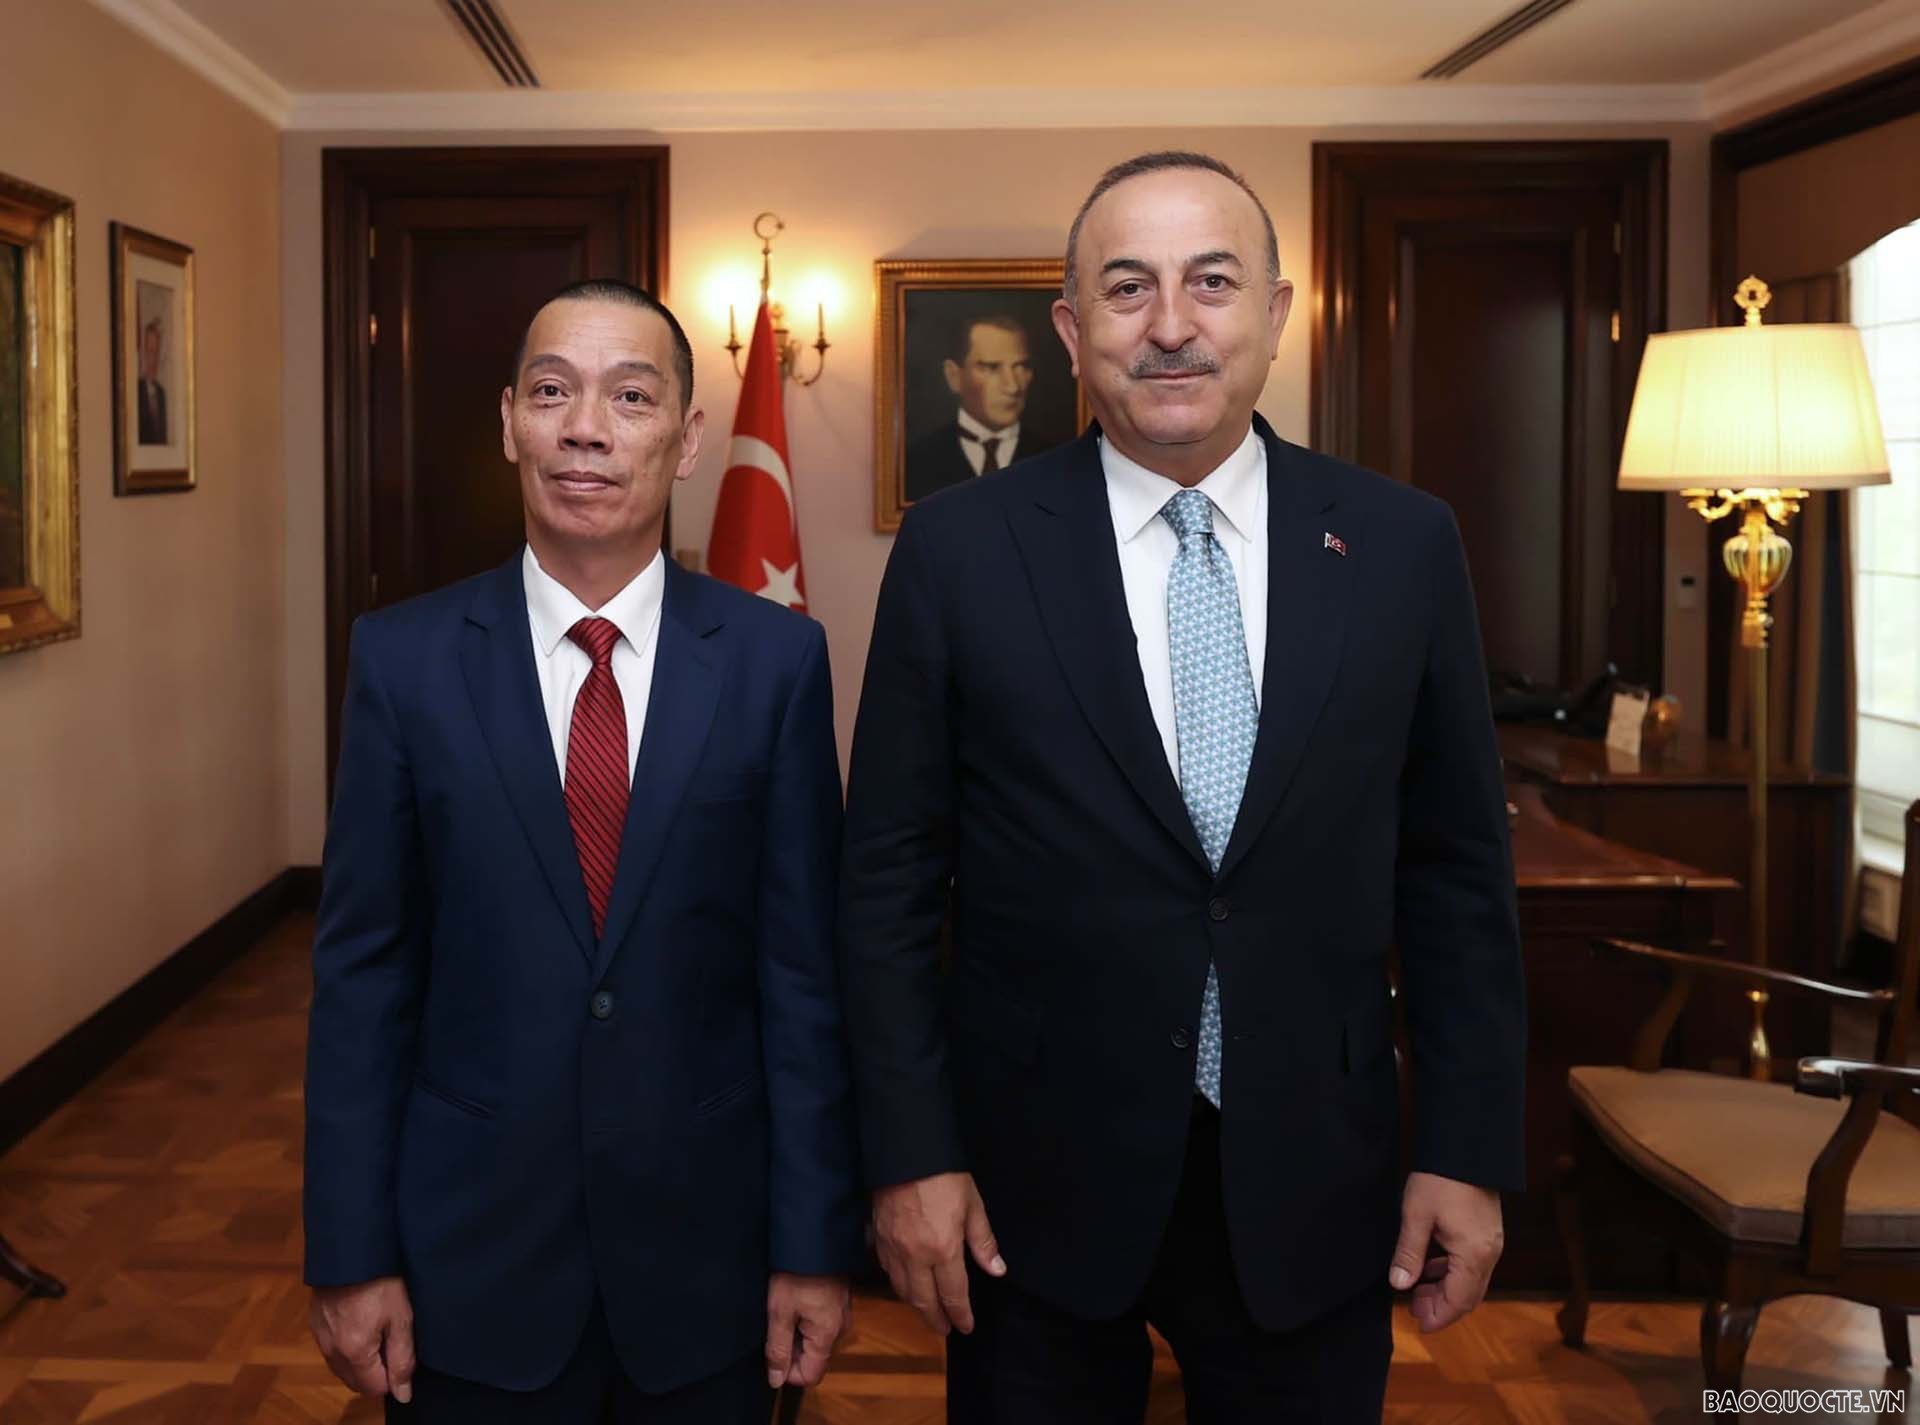 Đại sứ Đỗ Sơn Hải đã đến chào xã giao Bộ trưởng Ngoại giao Thổ Nhĩ Kỳ Mevlut Cavusoglu.